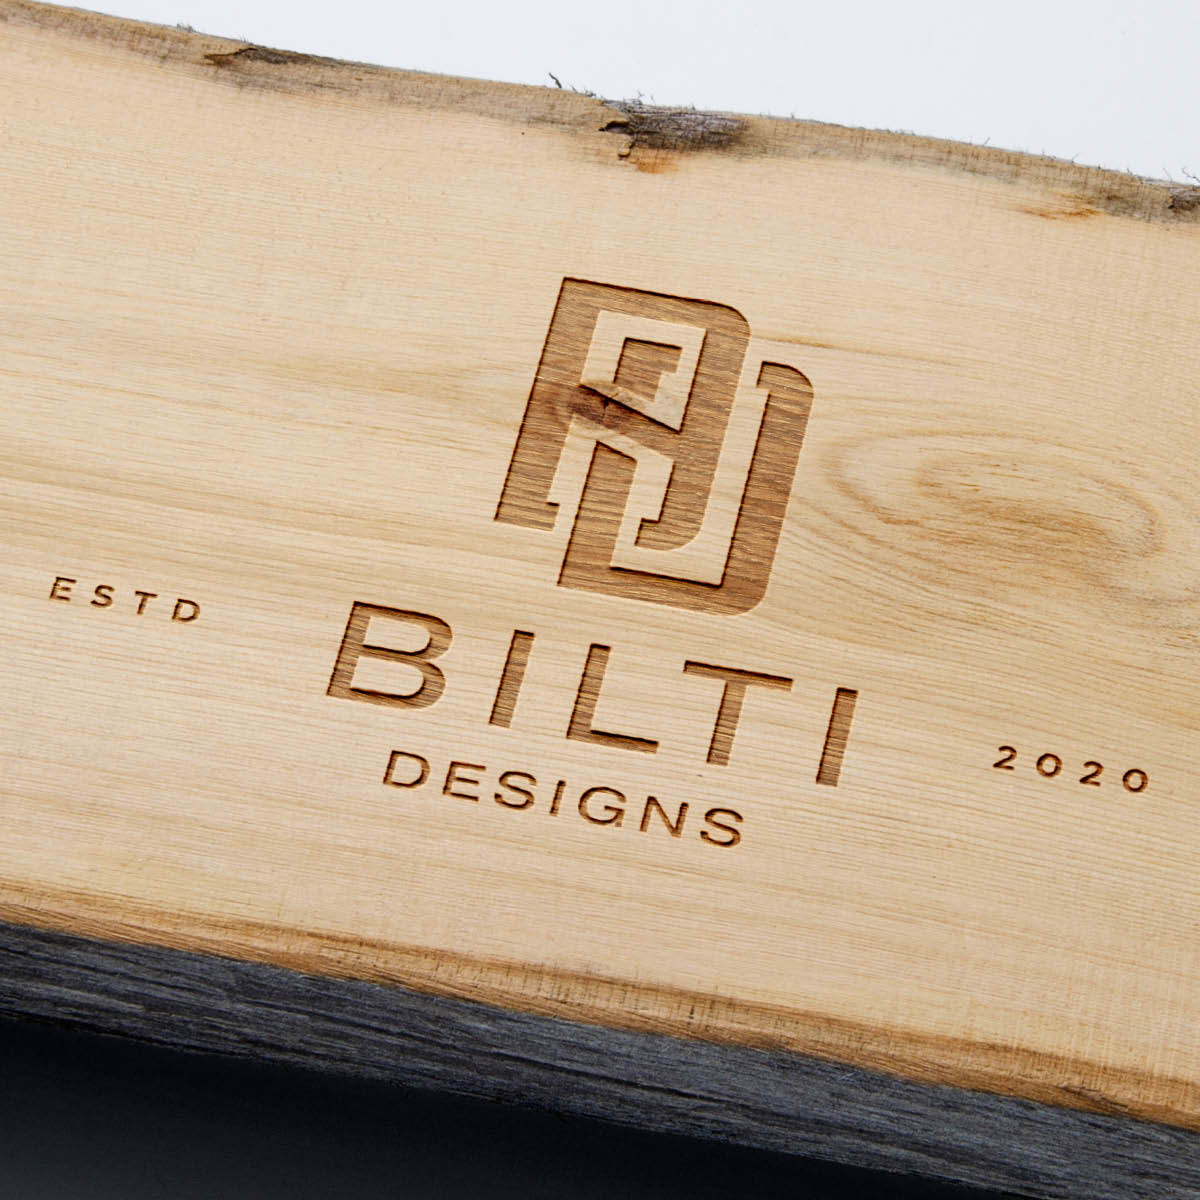 Bilti Designs